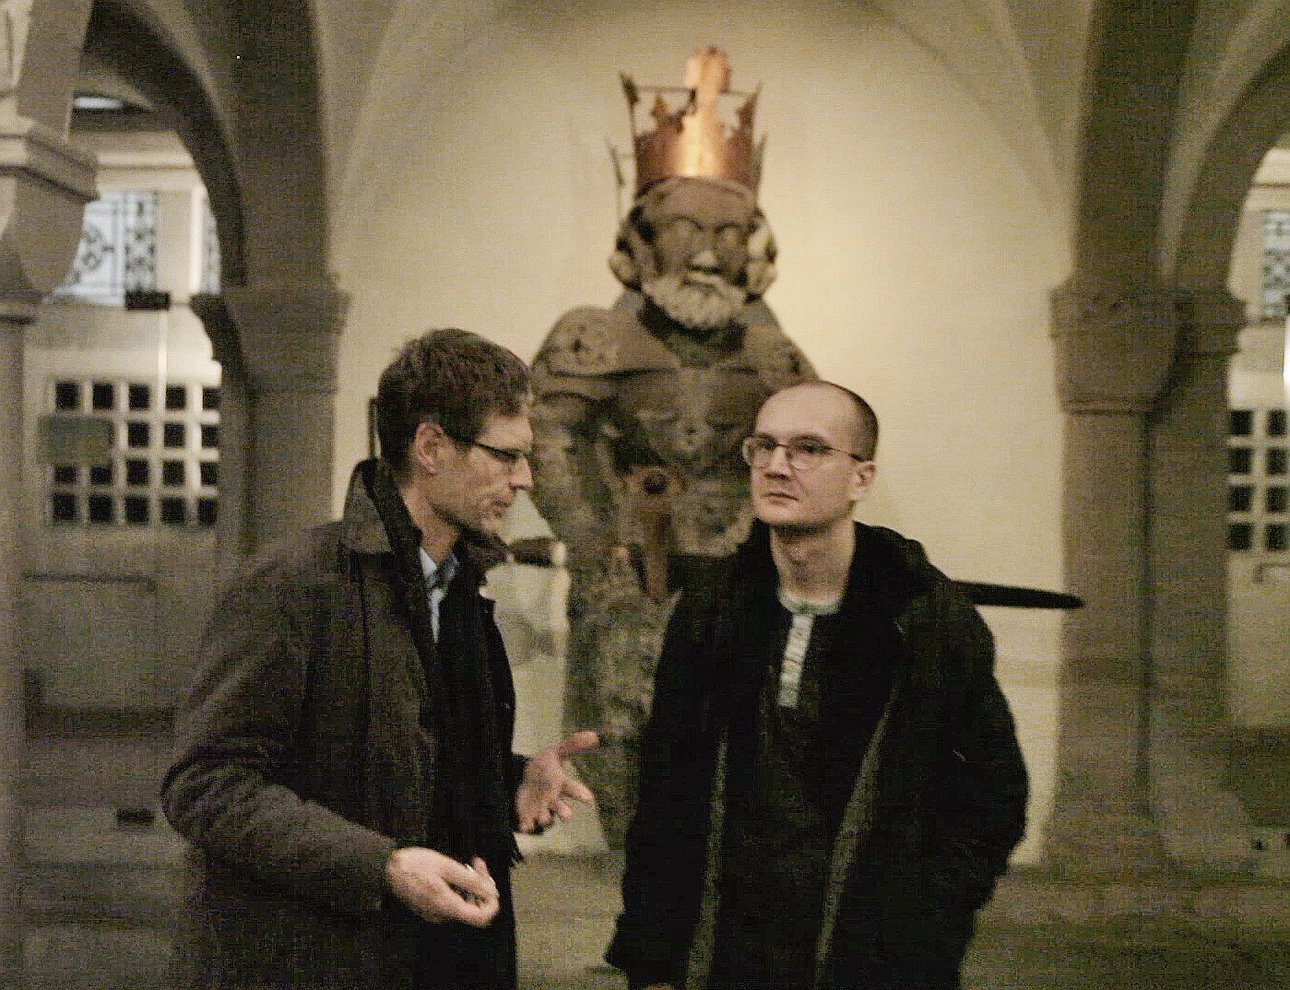 Евгений Антуфьев (справа) с пастором Мартином Рюшом. Фото: Manifesta’ 11